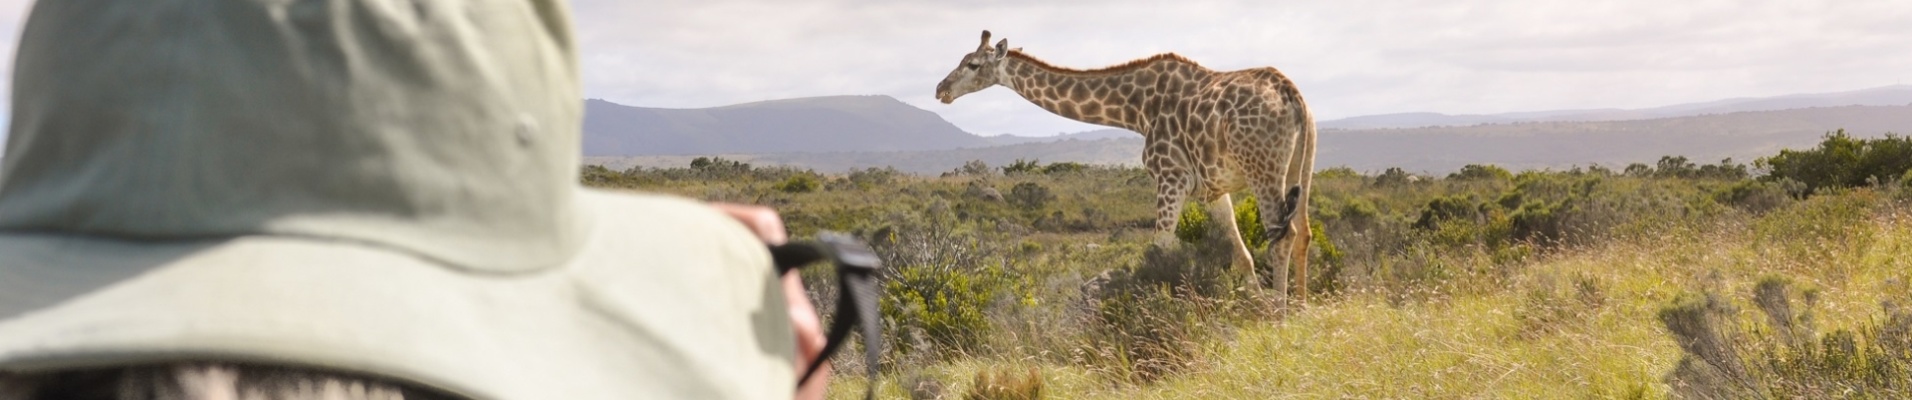 safari girafe tanzanie